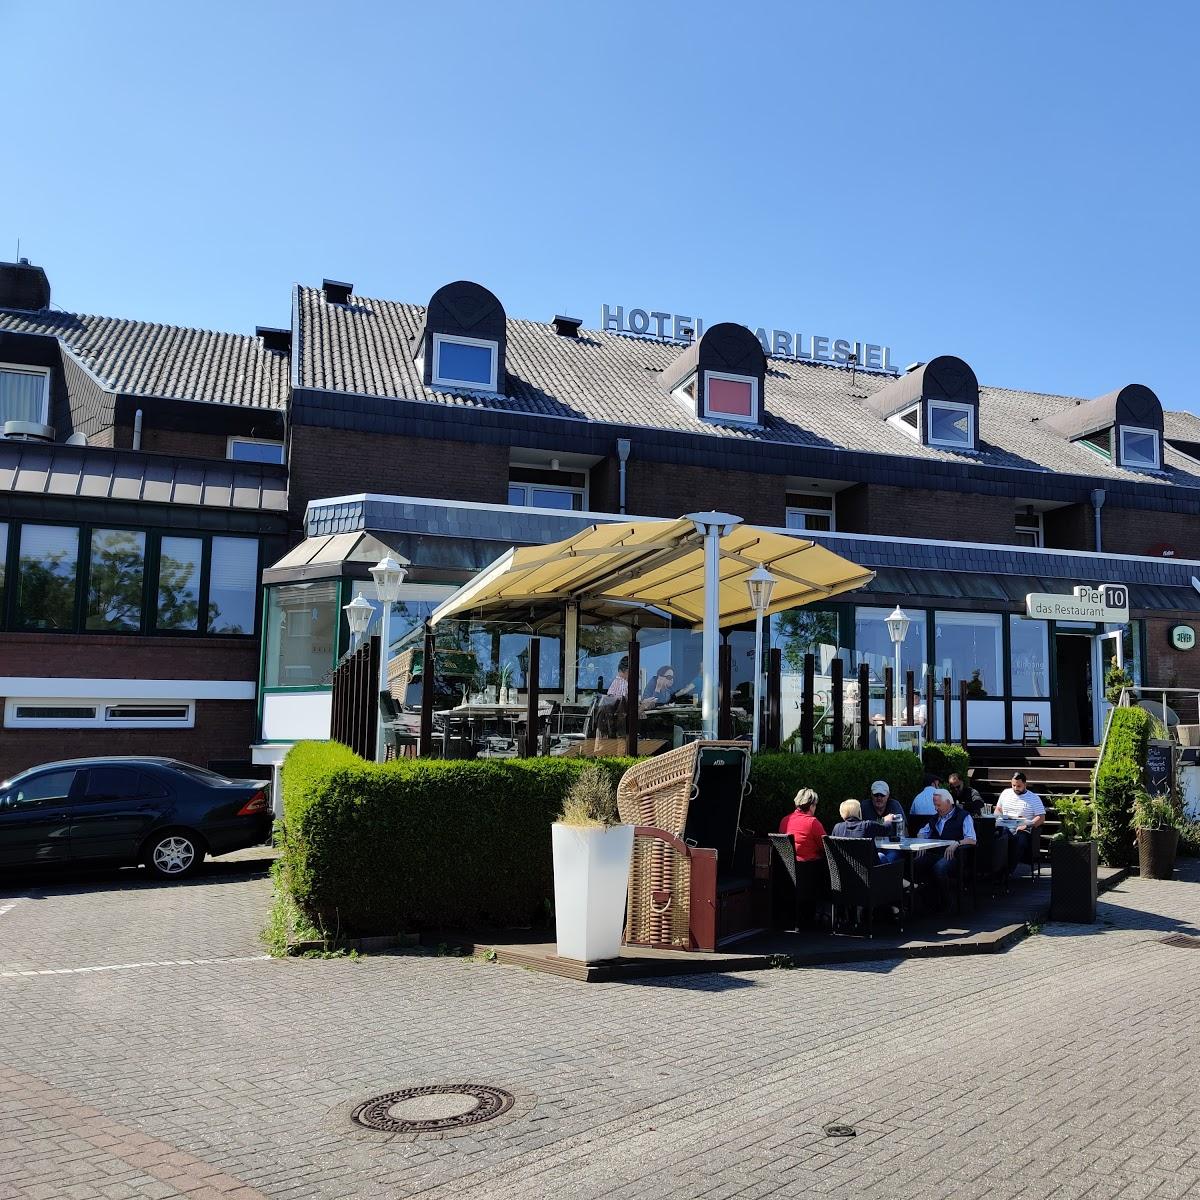 Restaurant "Isabella müller" in  Wittmund